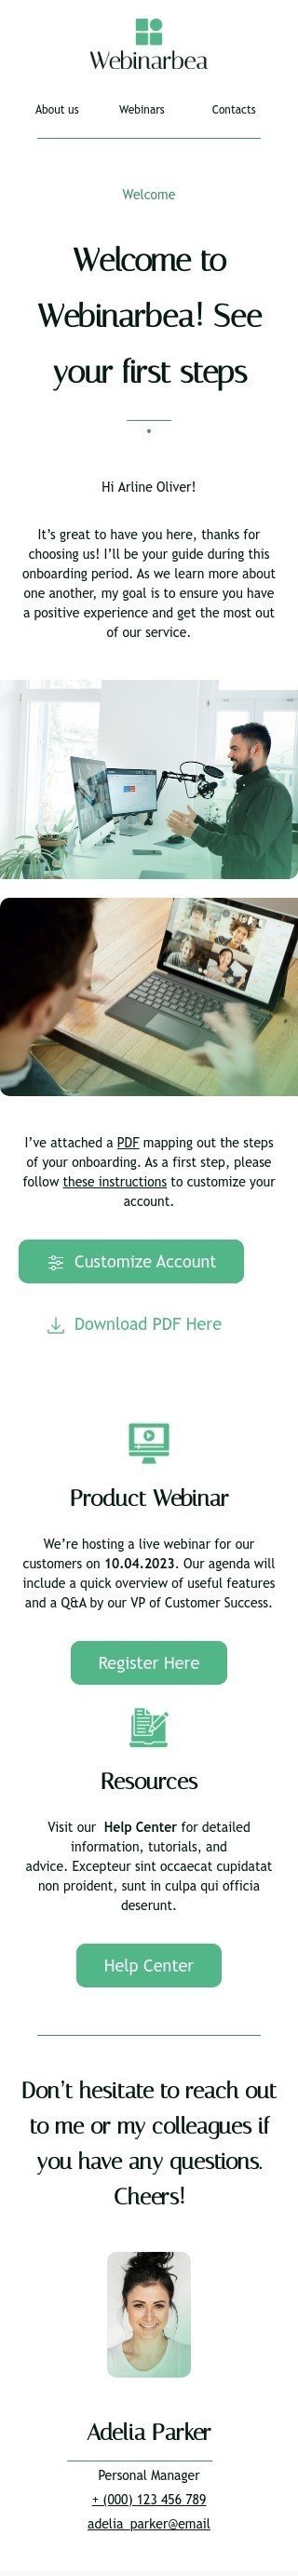 Modèle de courrier électronique promo «Voir vos premiers pas» pour le secteur webinars Affichage mobile